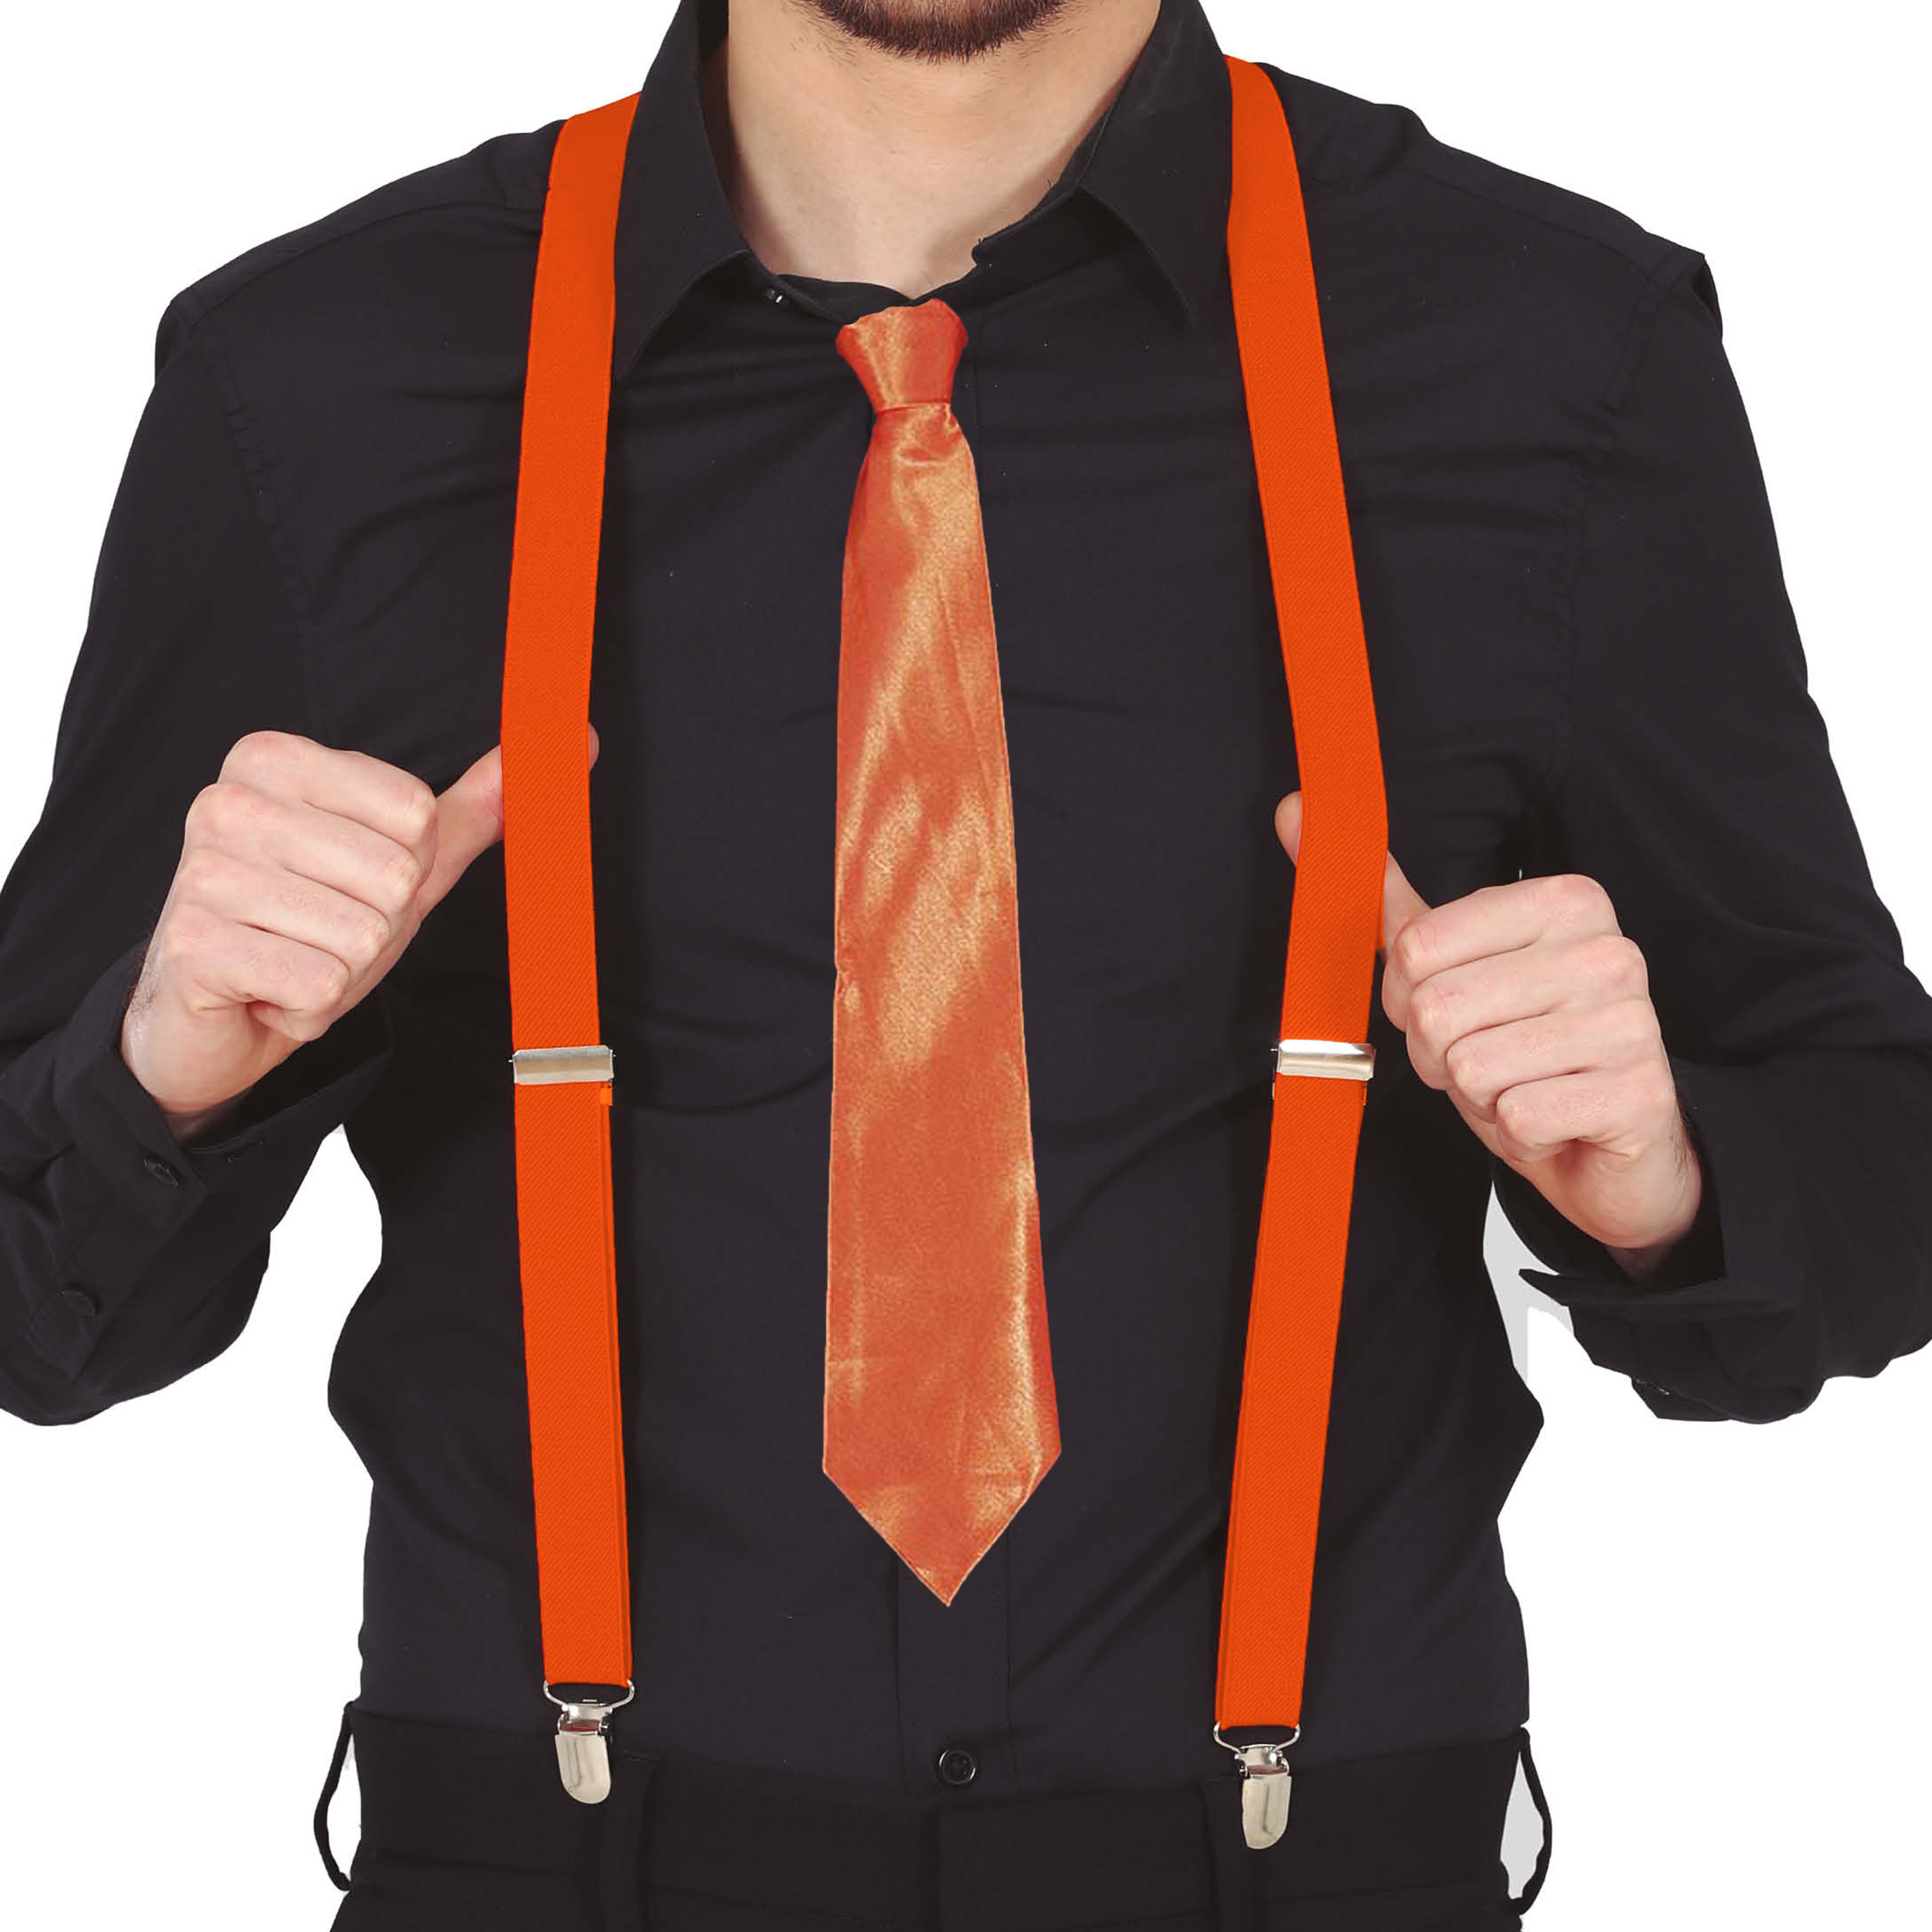 Carnaval verkleed bretels en stropdas - oranje - volwassenen - verkleed accessoires -